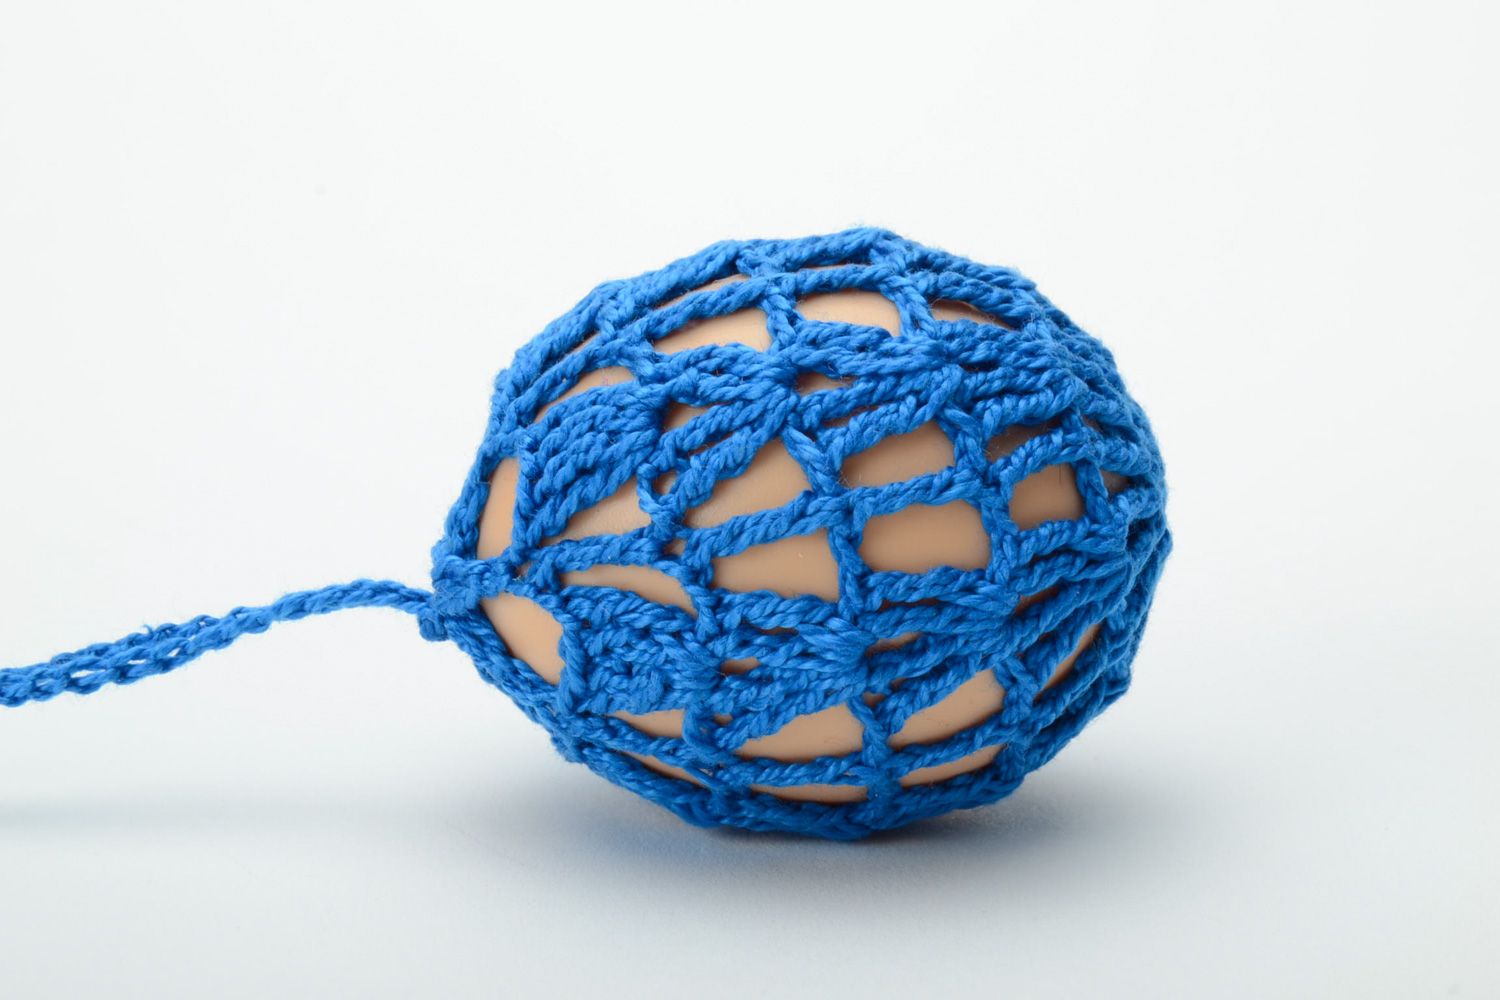 Пасхальное яйцо декоративное в ажурном синем чехле фото 4